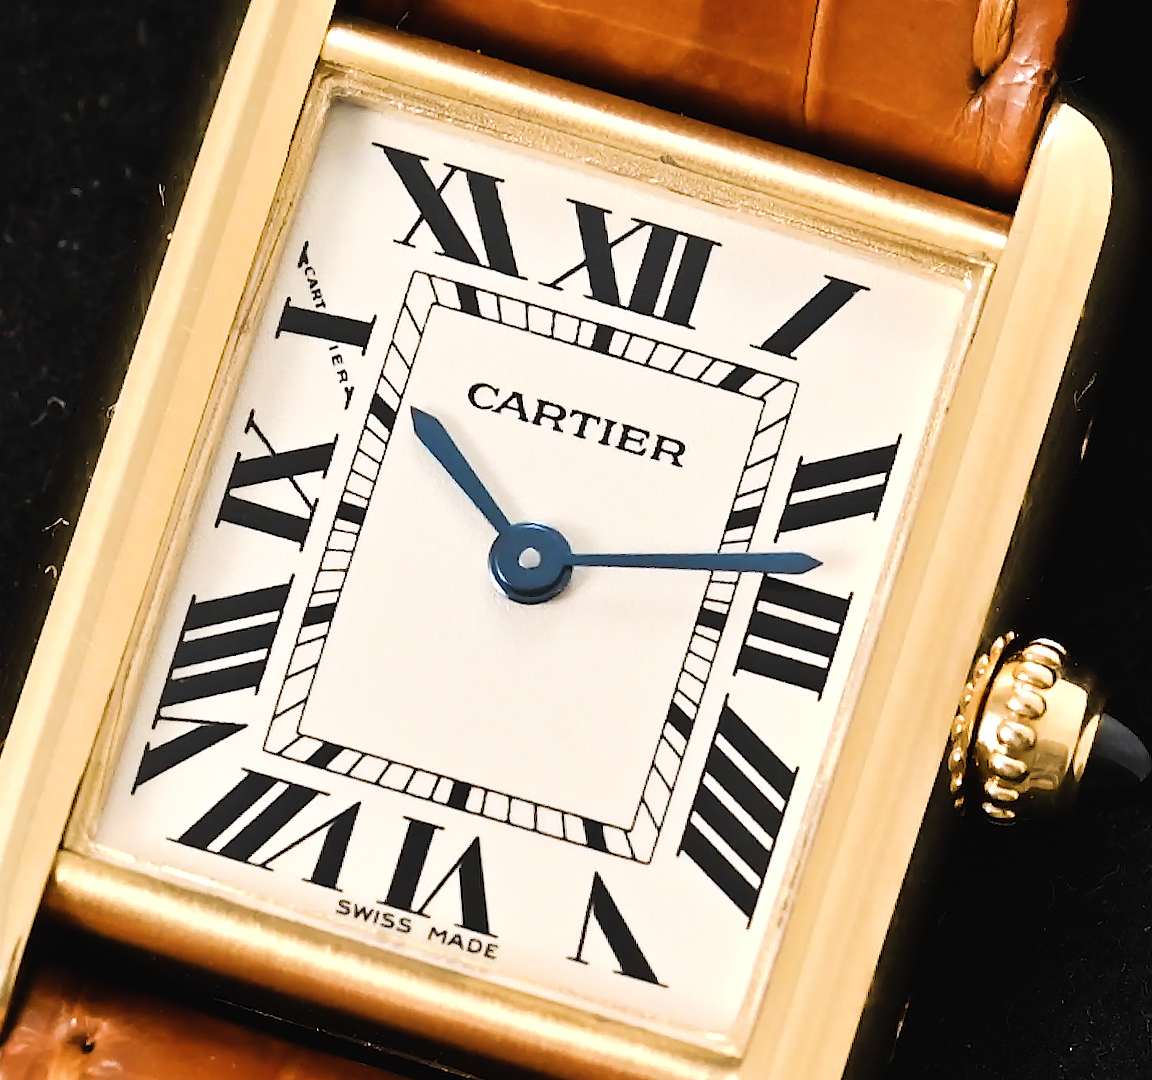 Cartier Tank Louis Cartier watch W1529856 - Rocca 1794